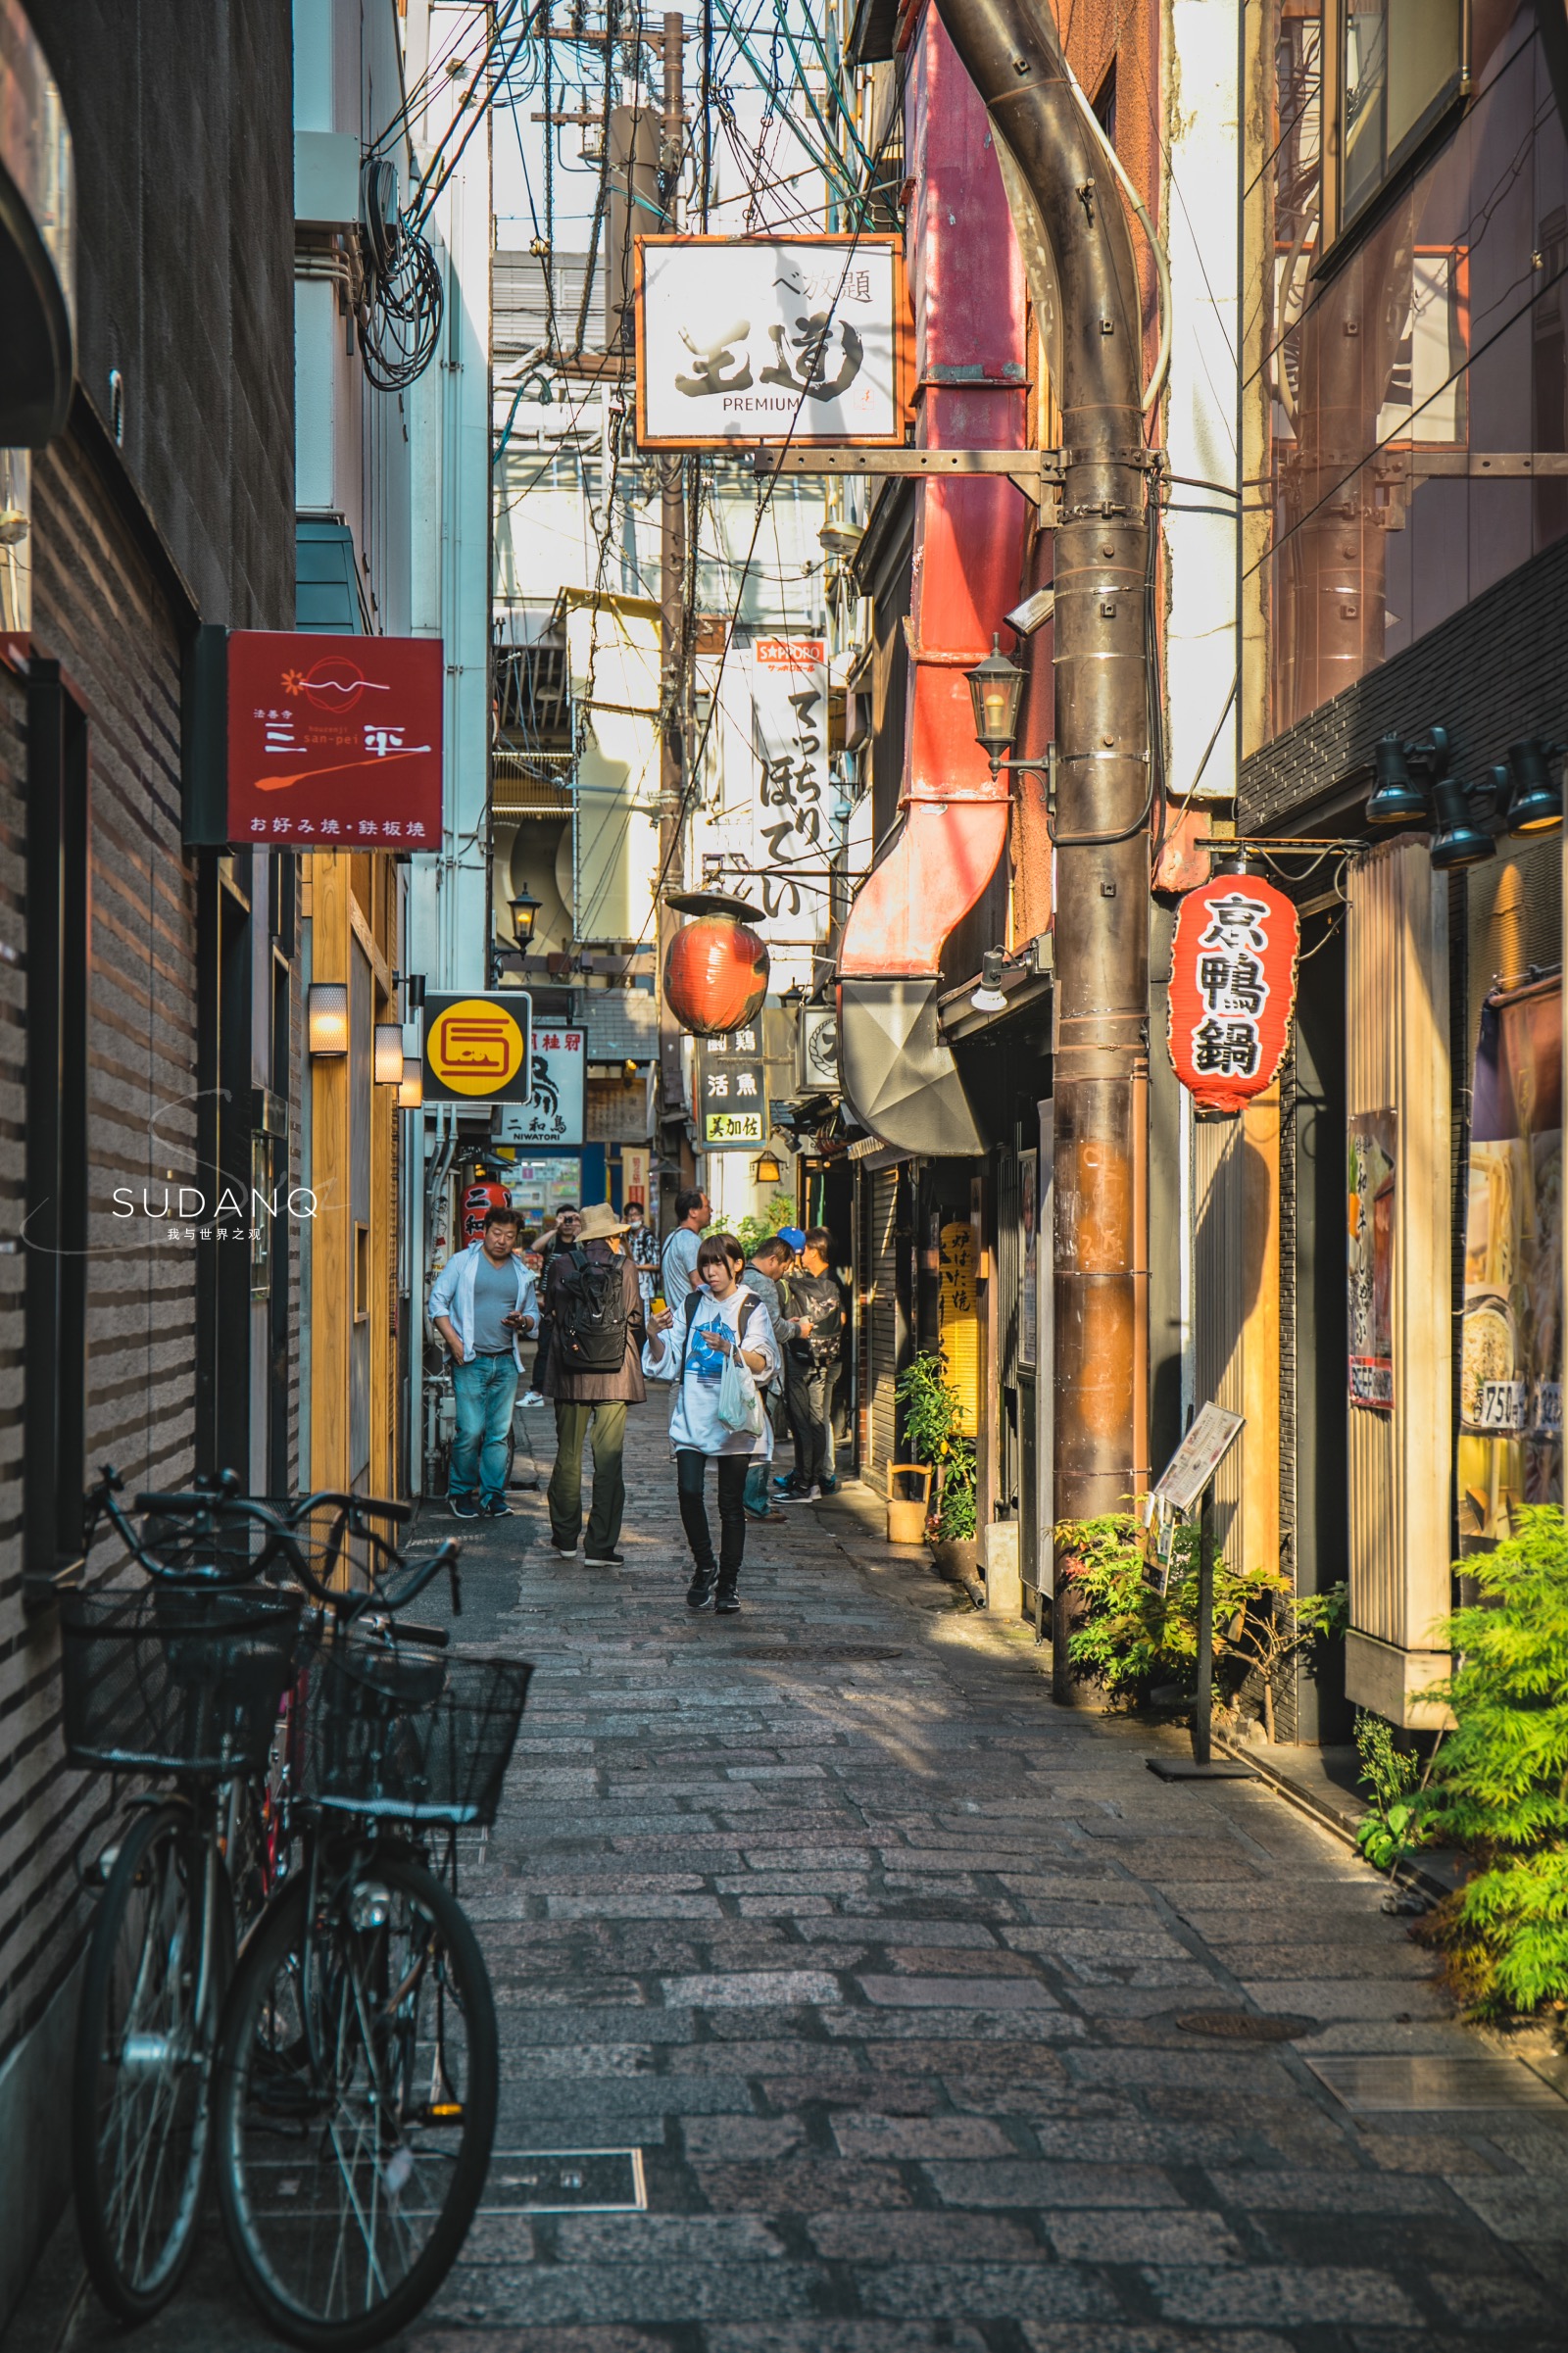 日本人口密度大于中国,但狭窄的城市街景如此惊艳:竖构图摄影